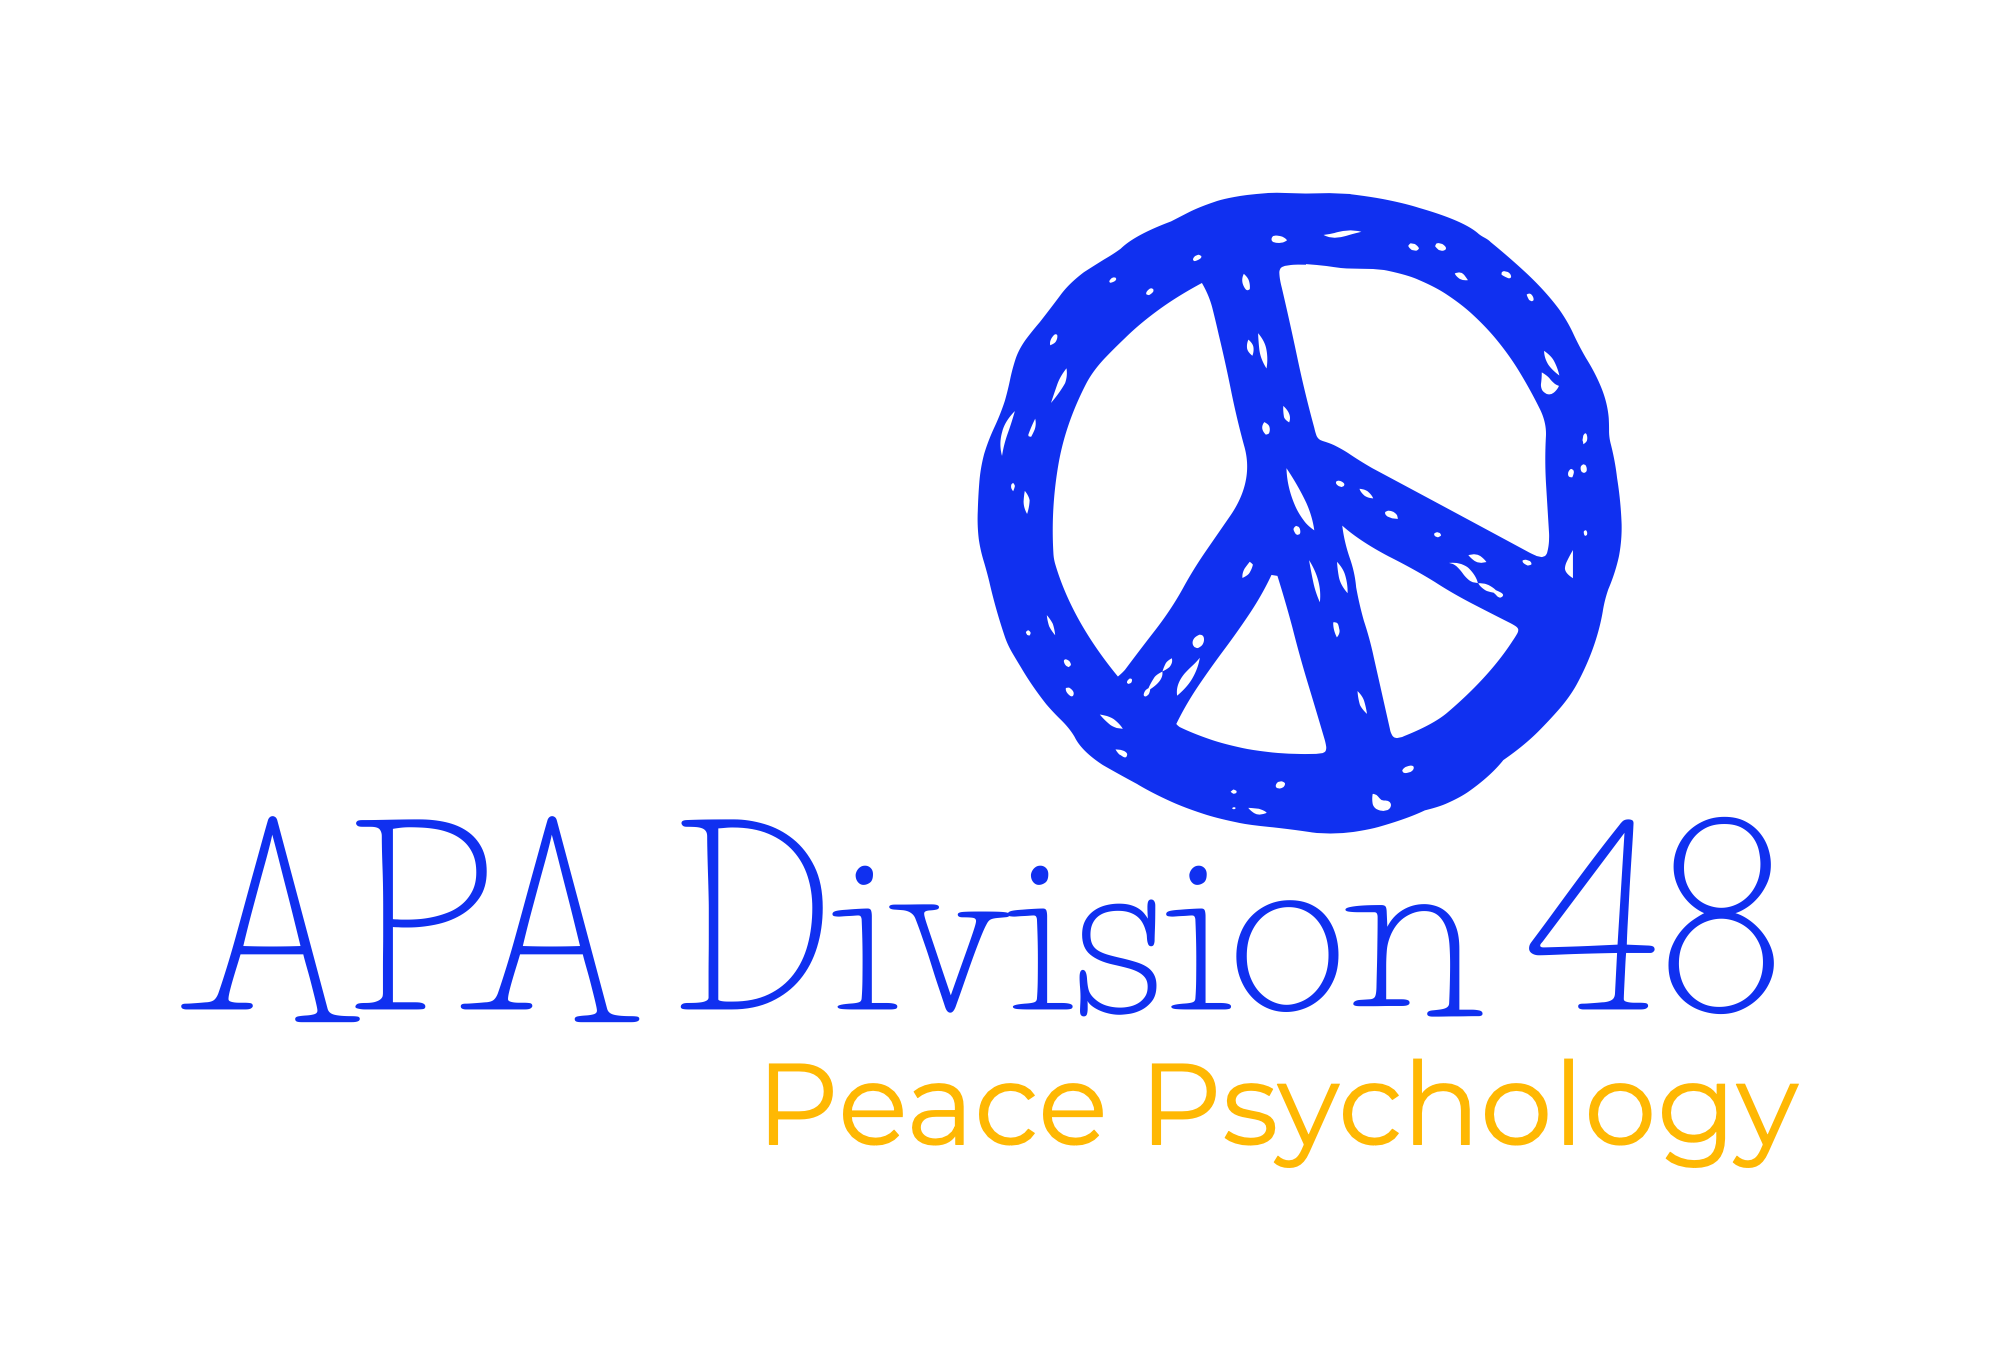 APA Division 48